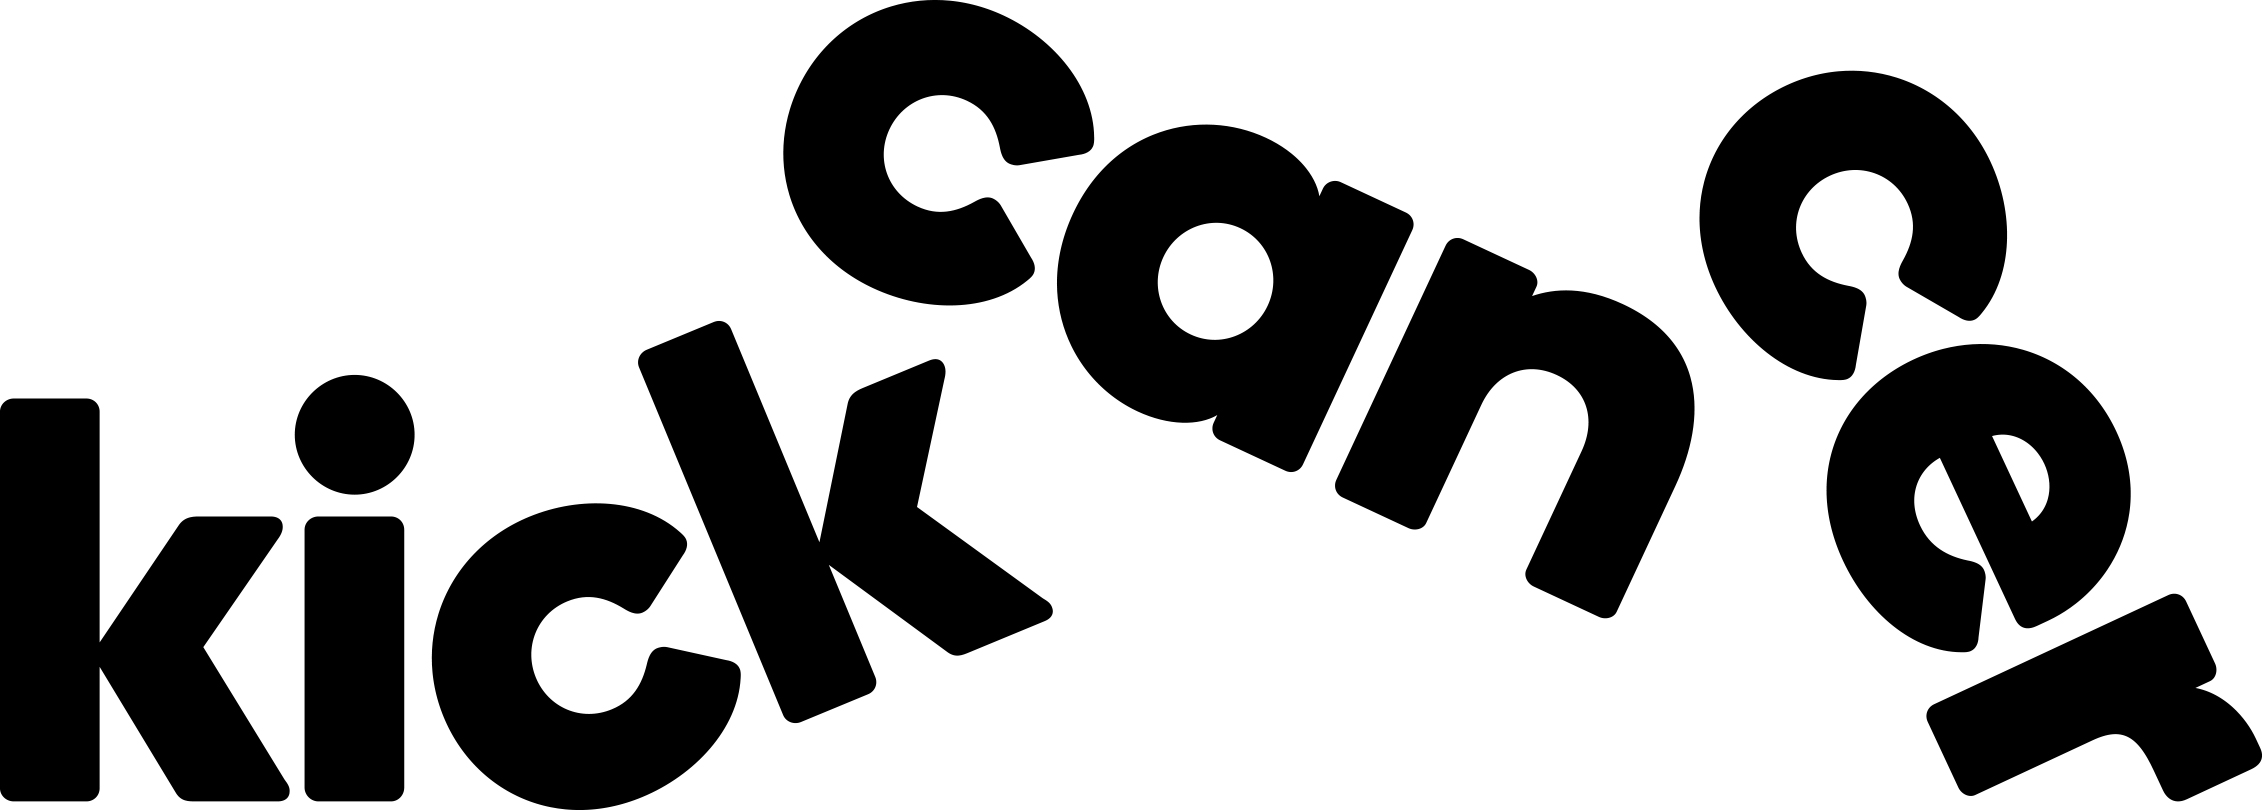 Stichting KickCancer logo